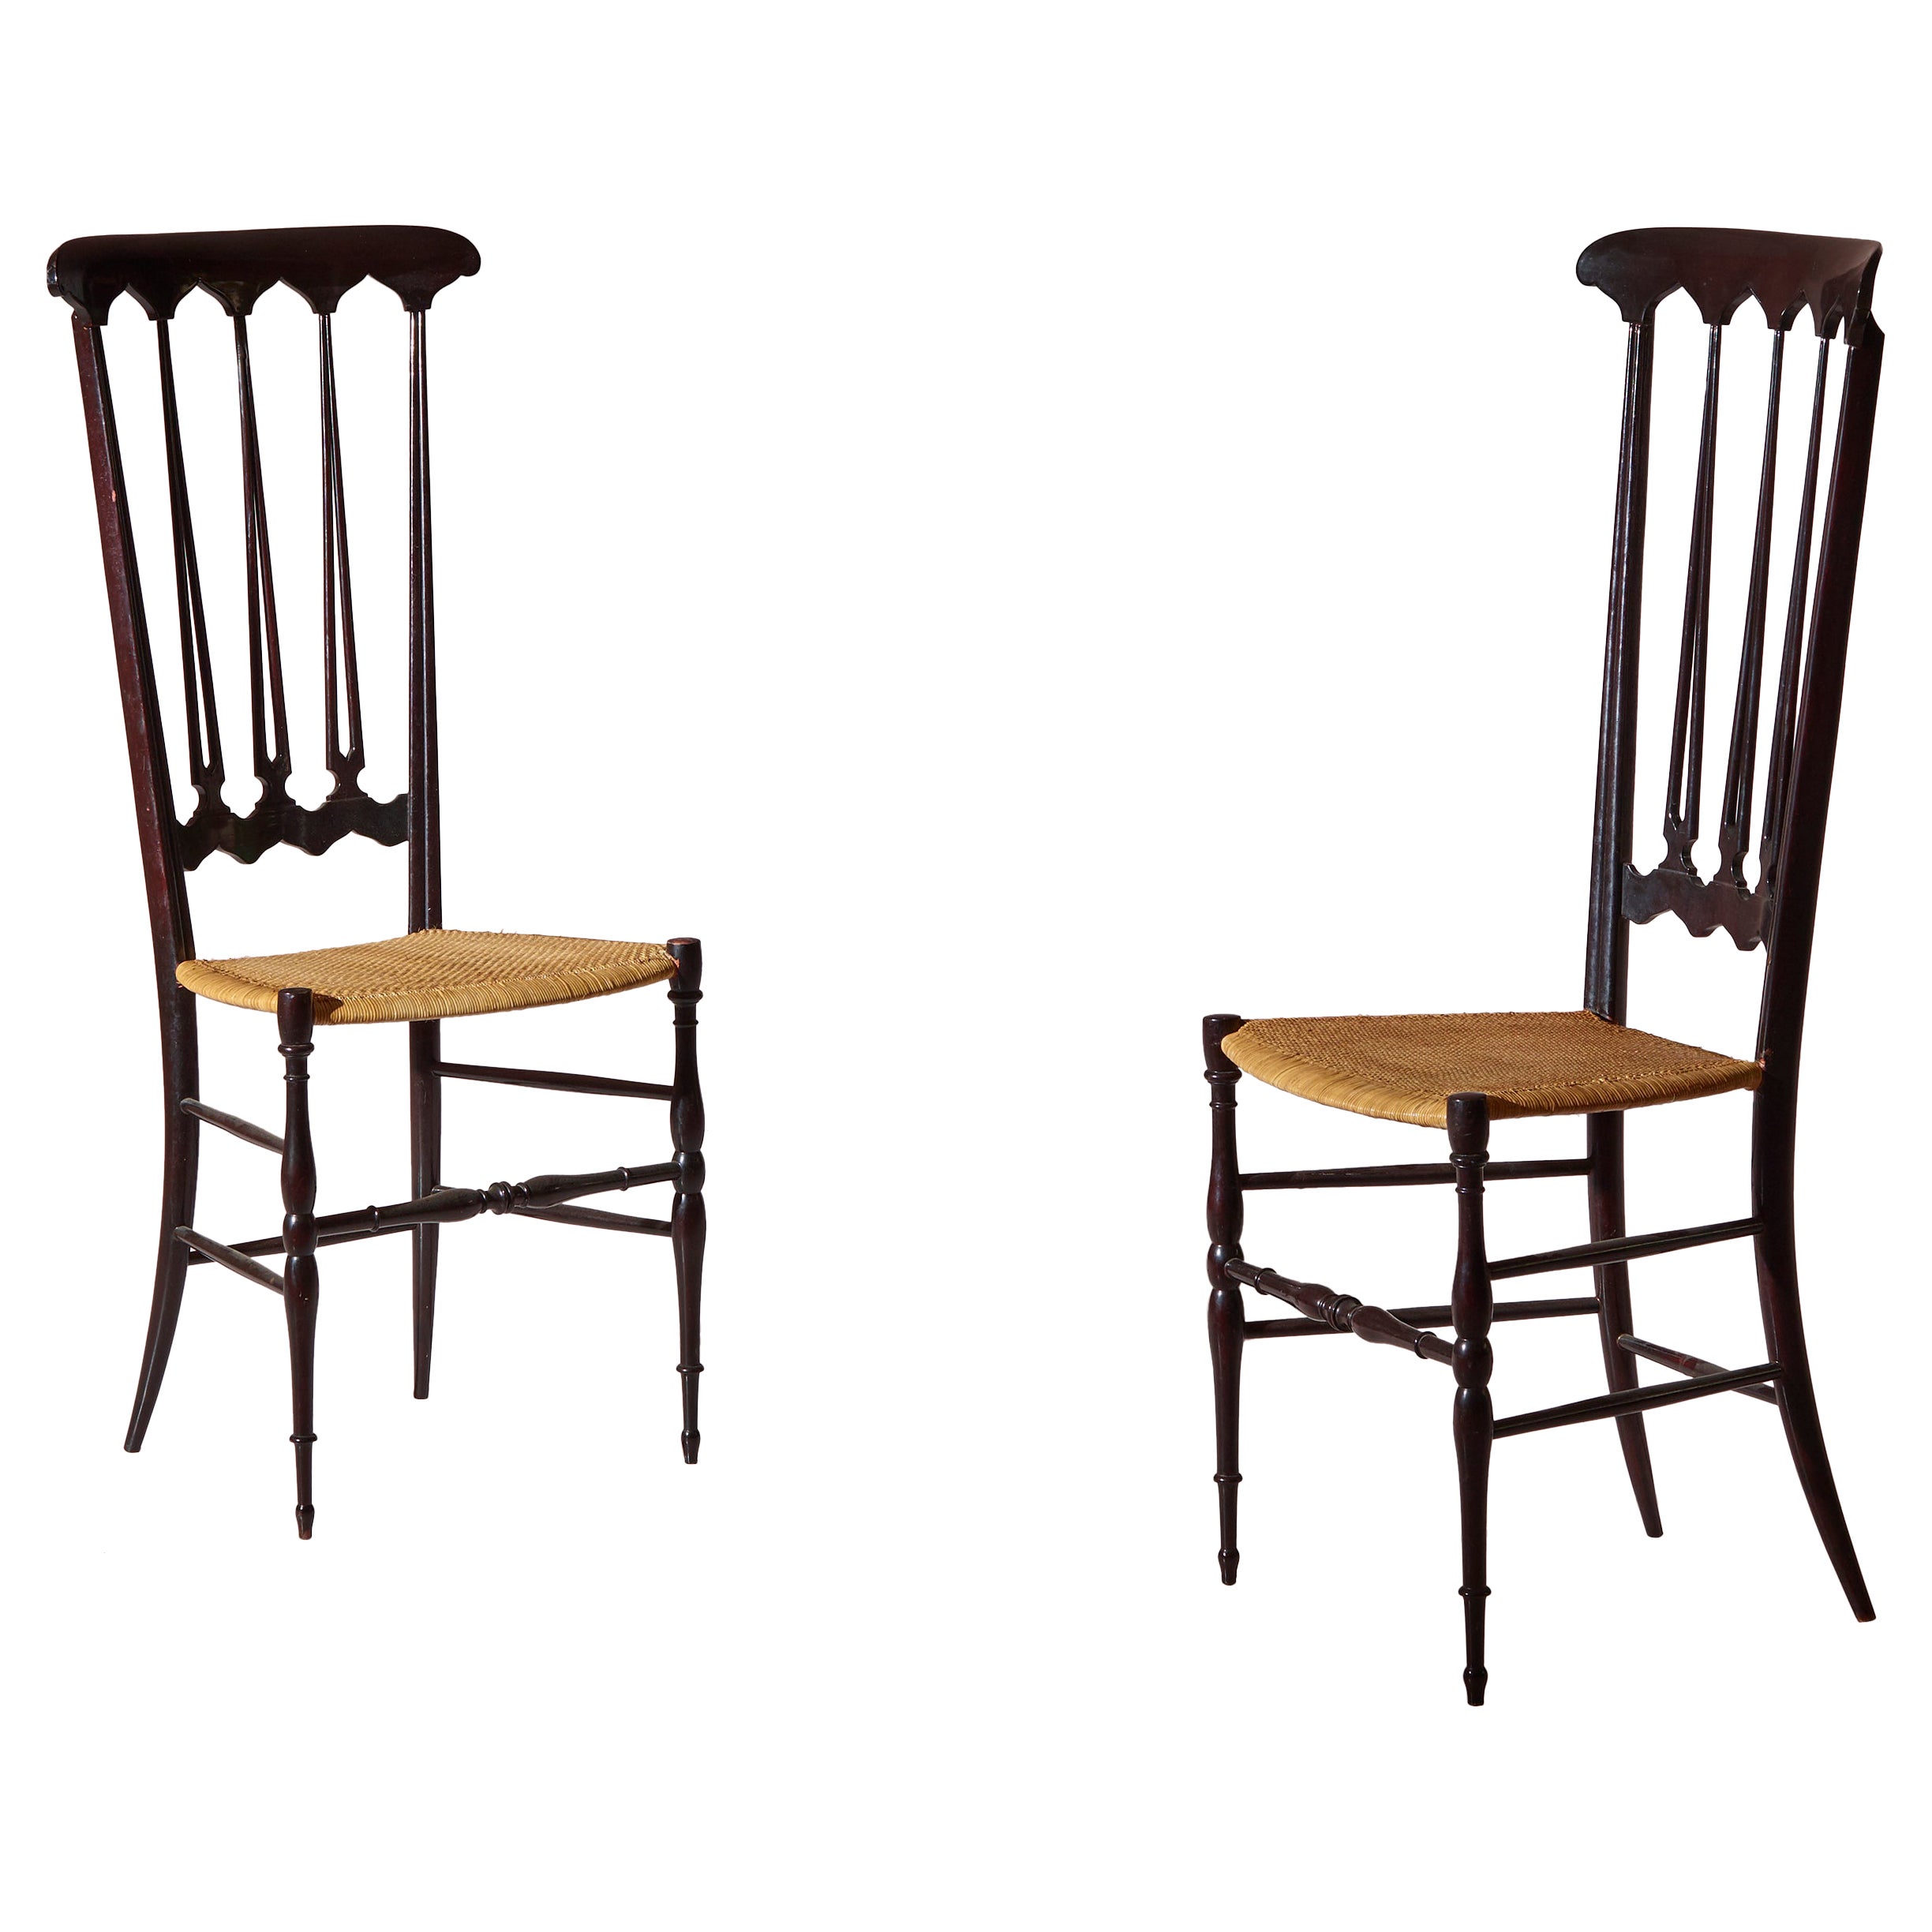 Paar Stühle „Spade“ aus Schilfrohr und Buche mit hoher Rückenlehne, hergestellt in Chiavari, Italien 1960er Jahre